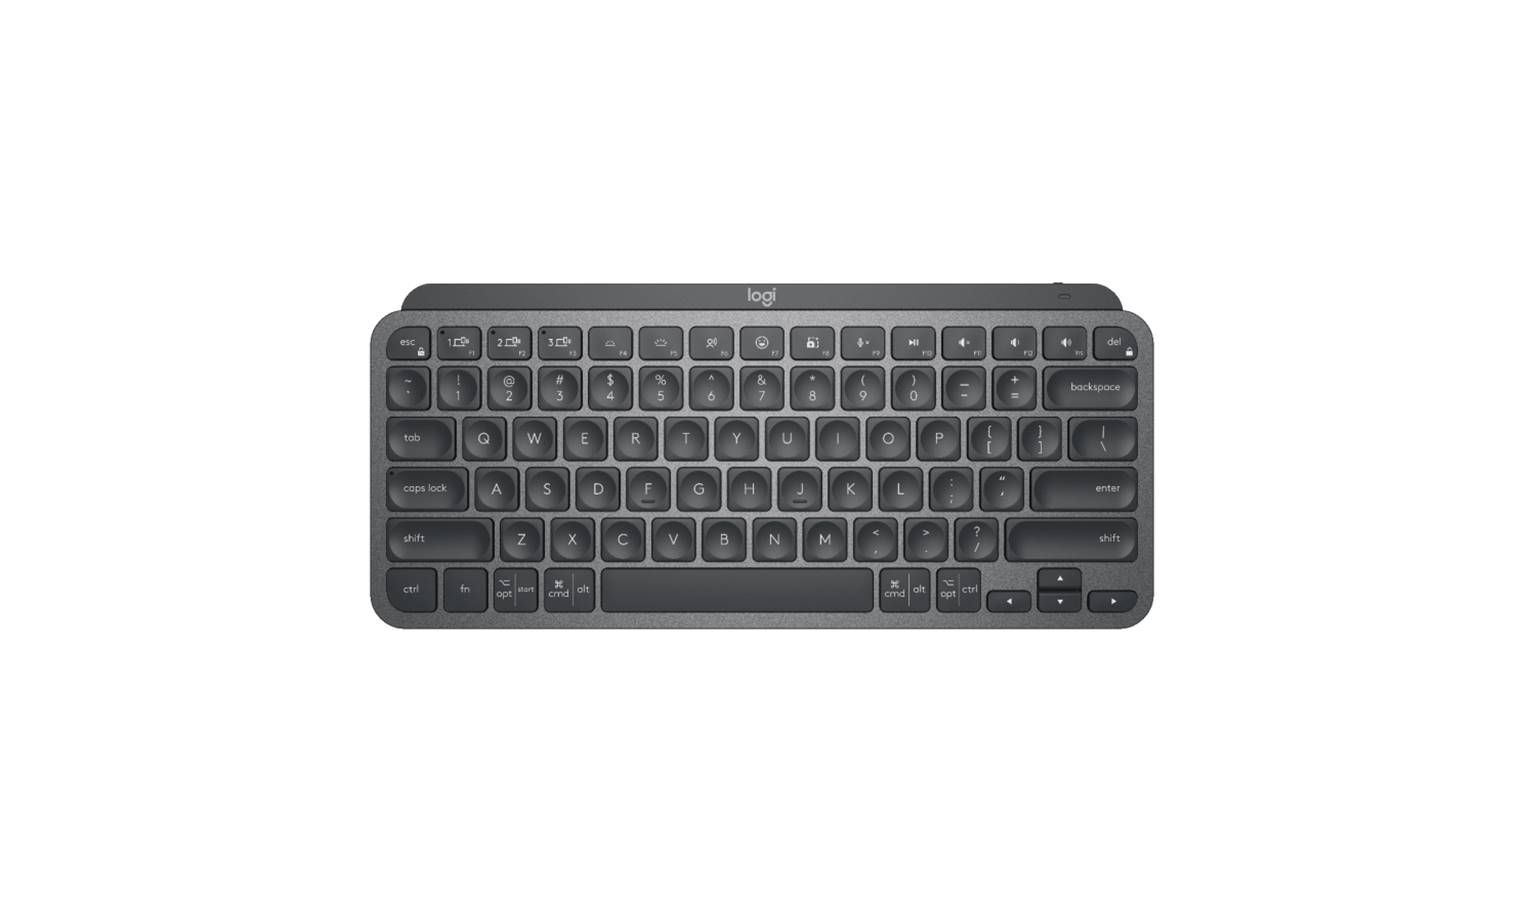 buy gujarati keyboard for windows 10